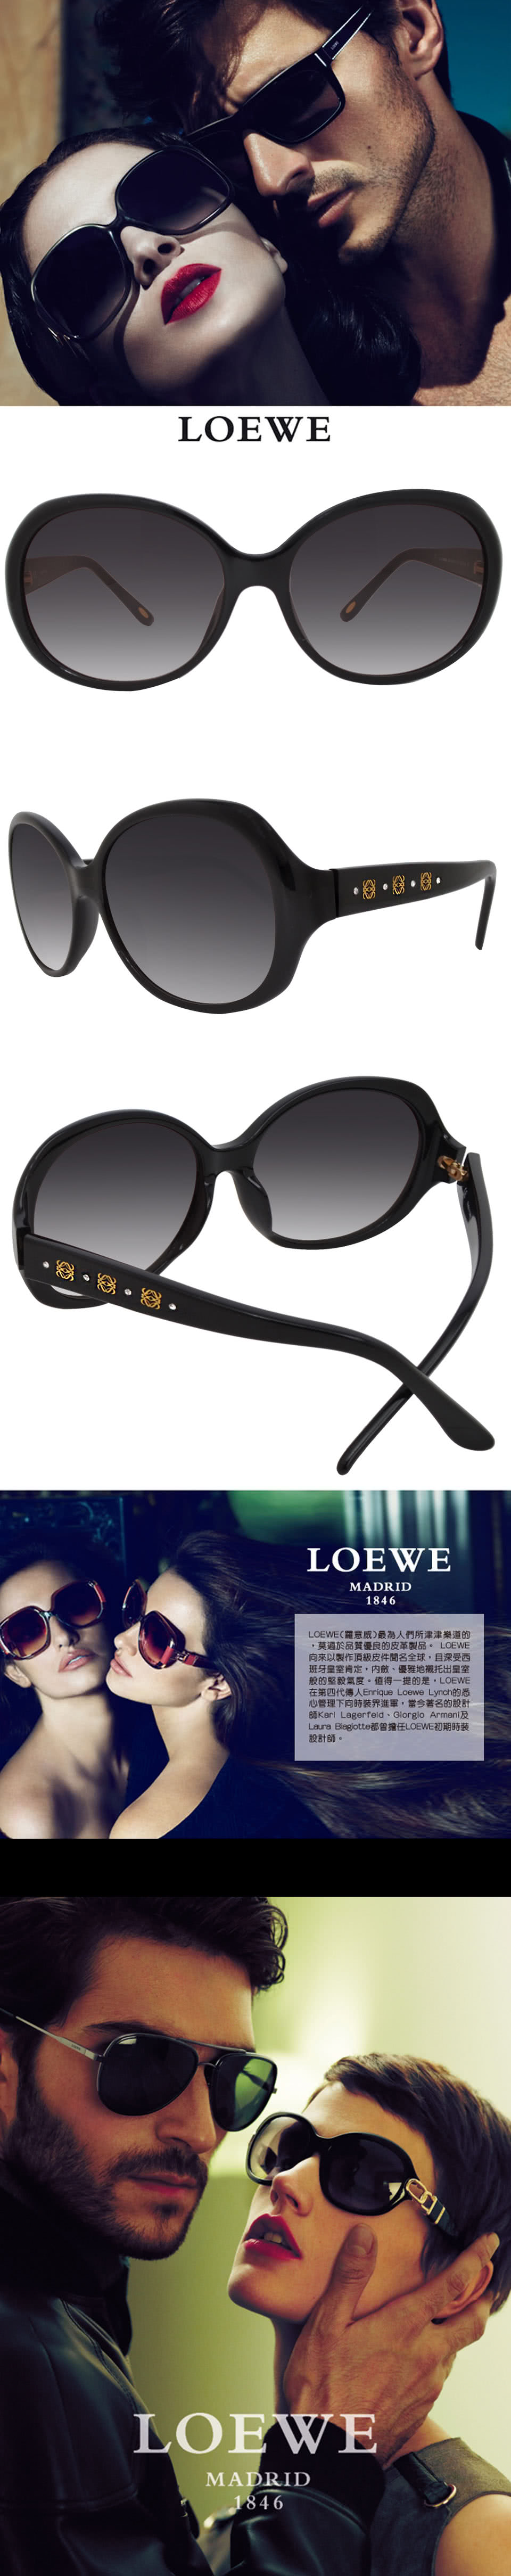 LOEWE 羅威 西班牙皇室品牌 經典必備大框款太陽眼鏡(黑